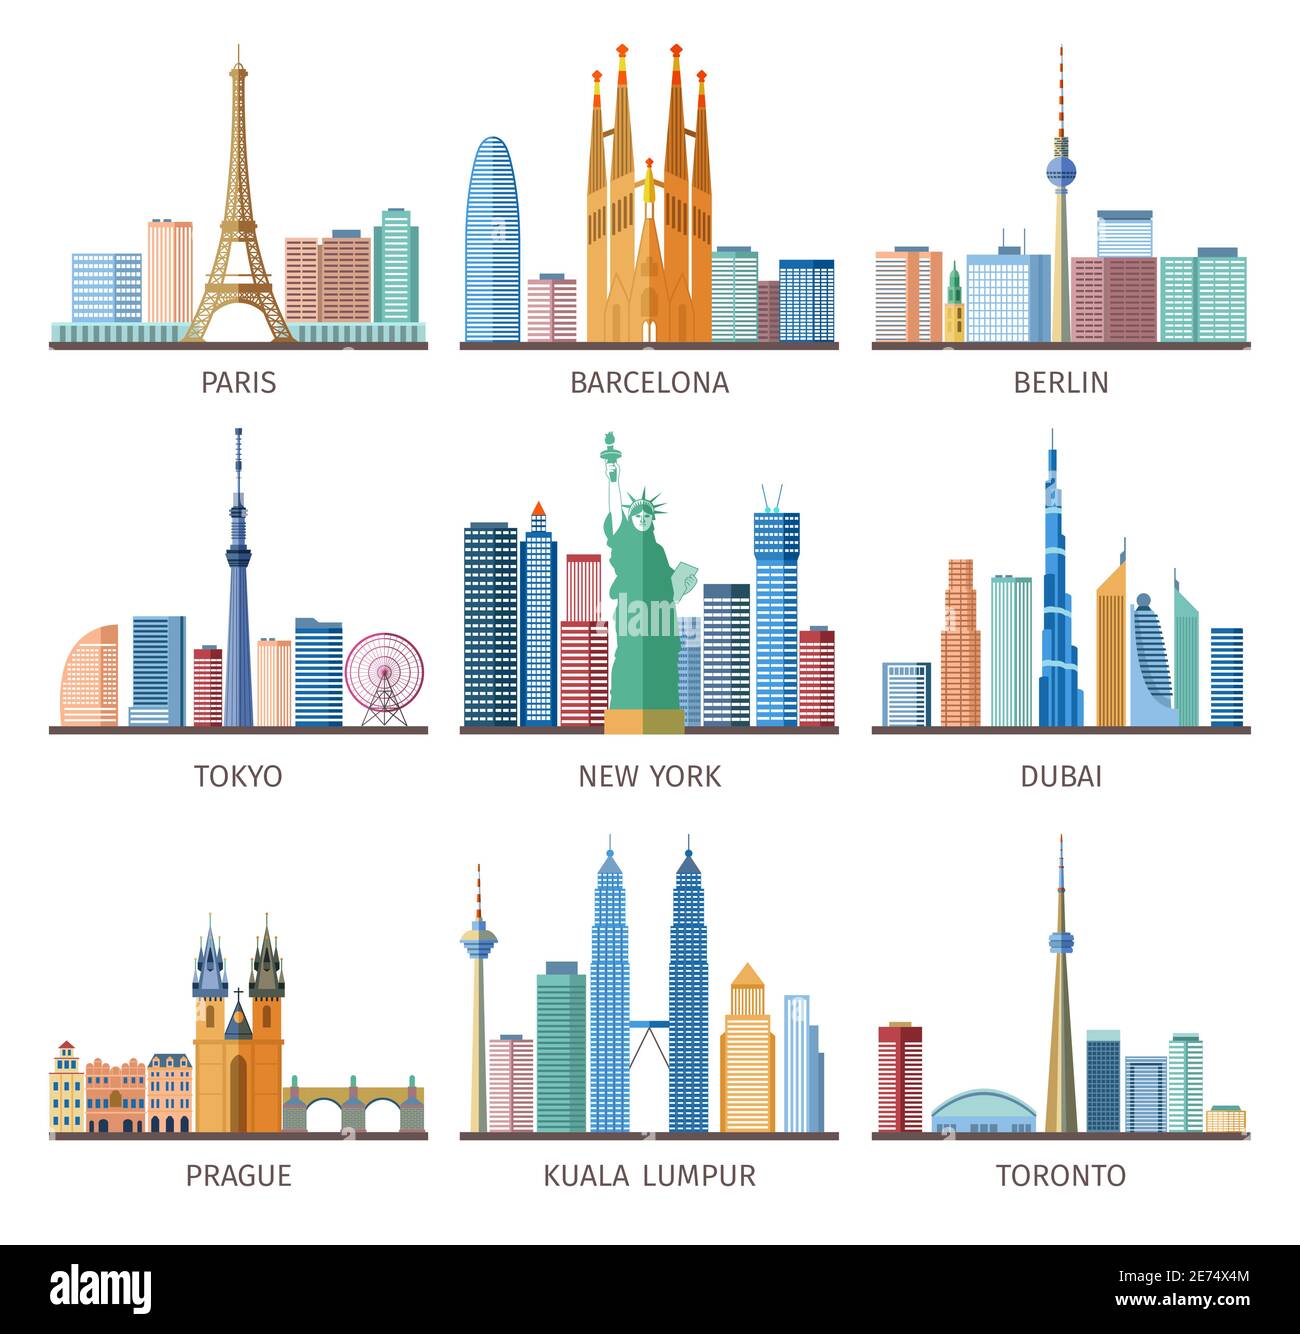 Les villes sont des gratte-ciel emblématiques partout dans le monde avec la tour Eiffel Et illustration vectorielle isolée plate de la Statue de la liberté Illustration de Vecteur